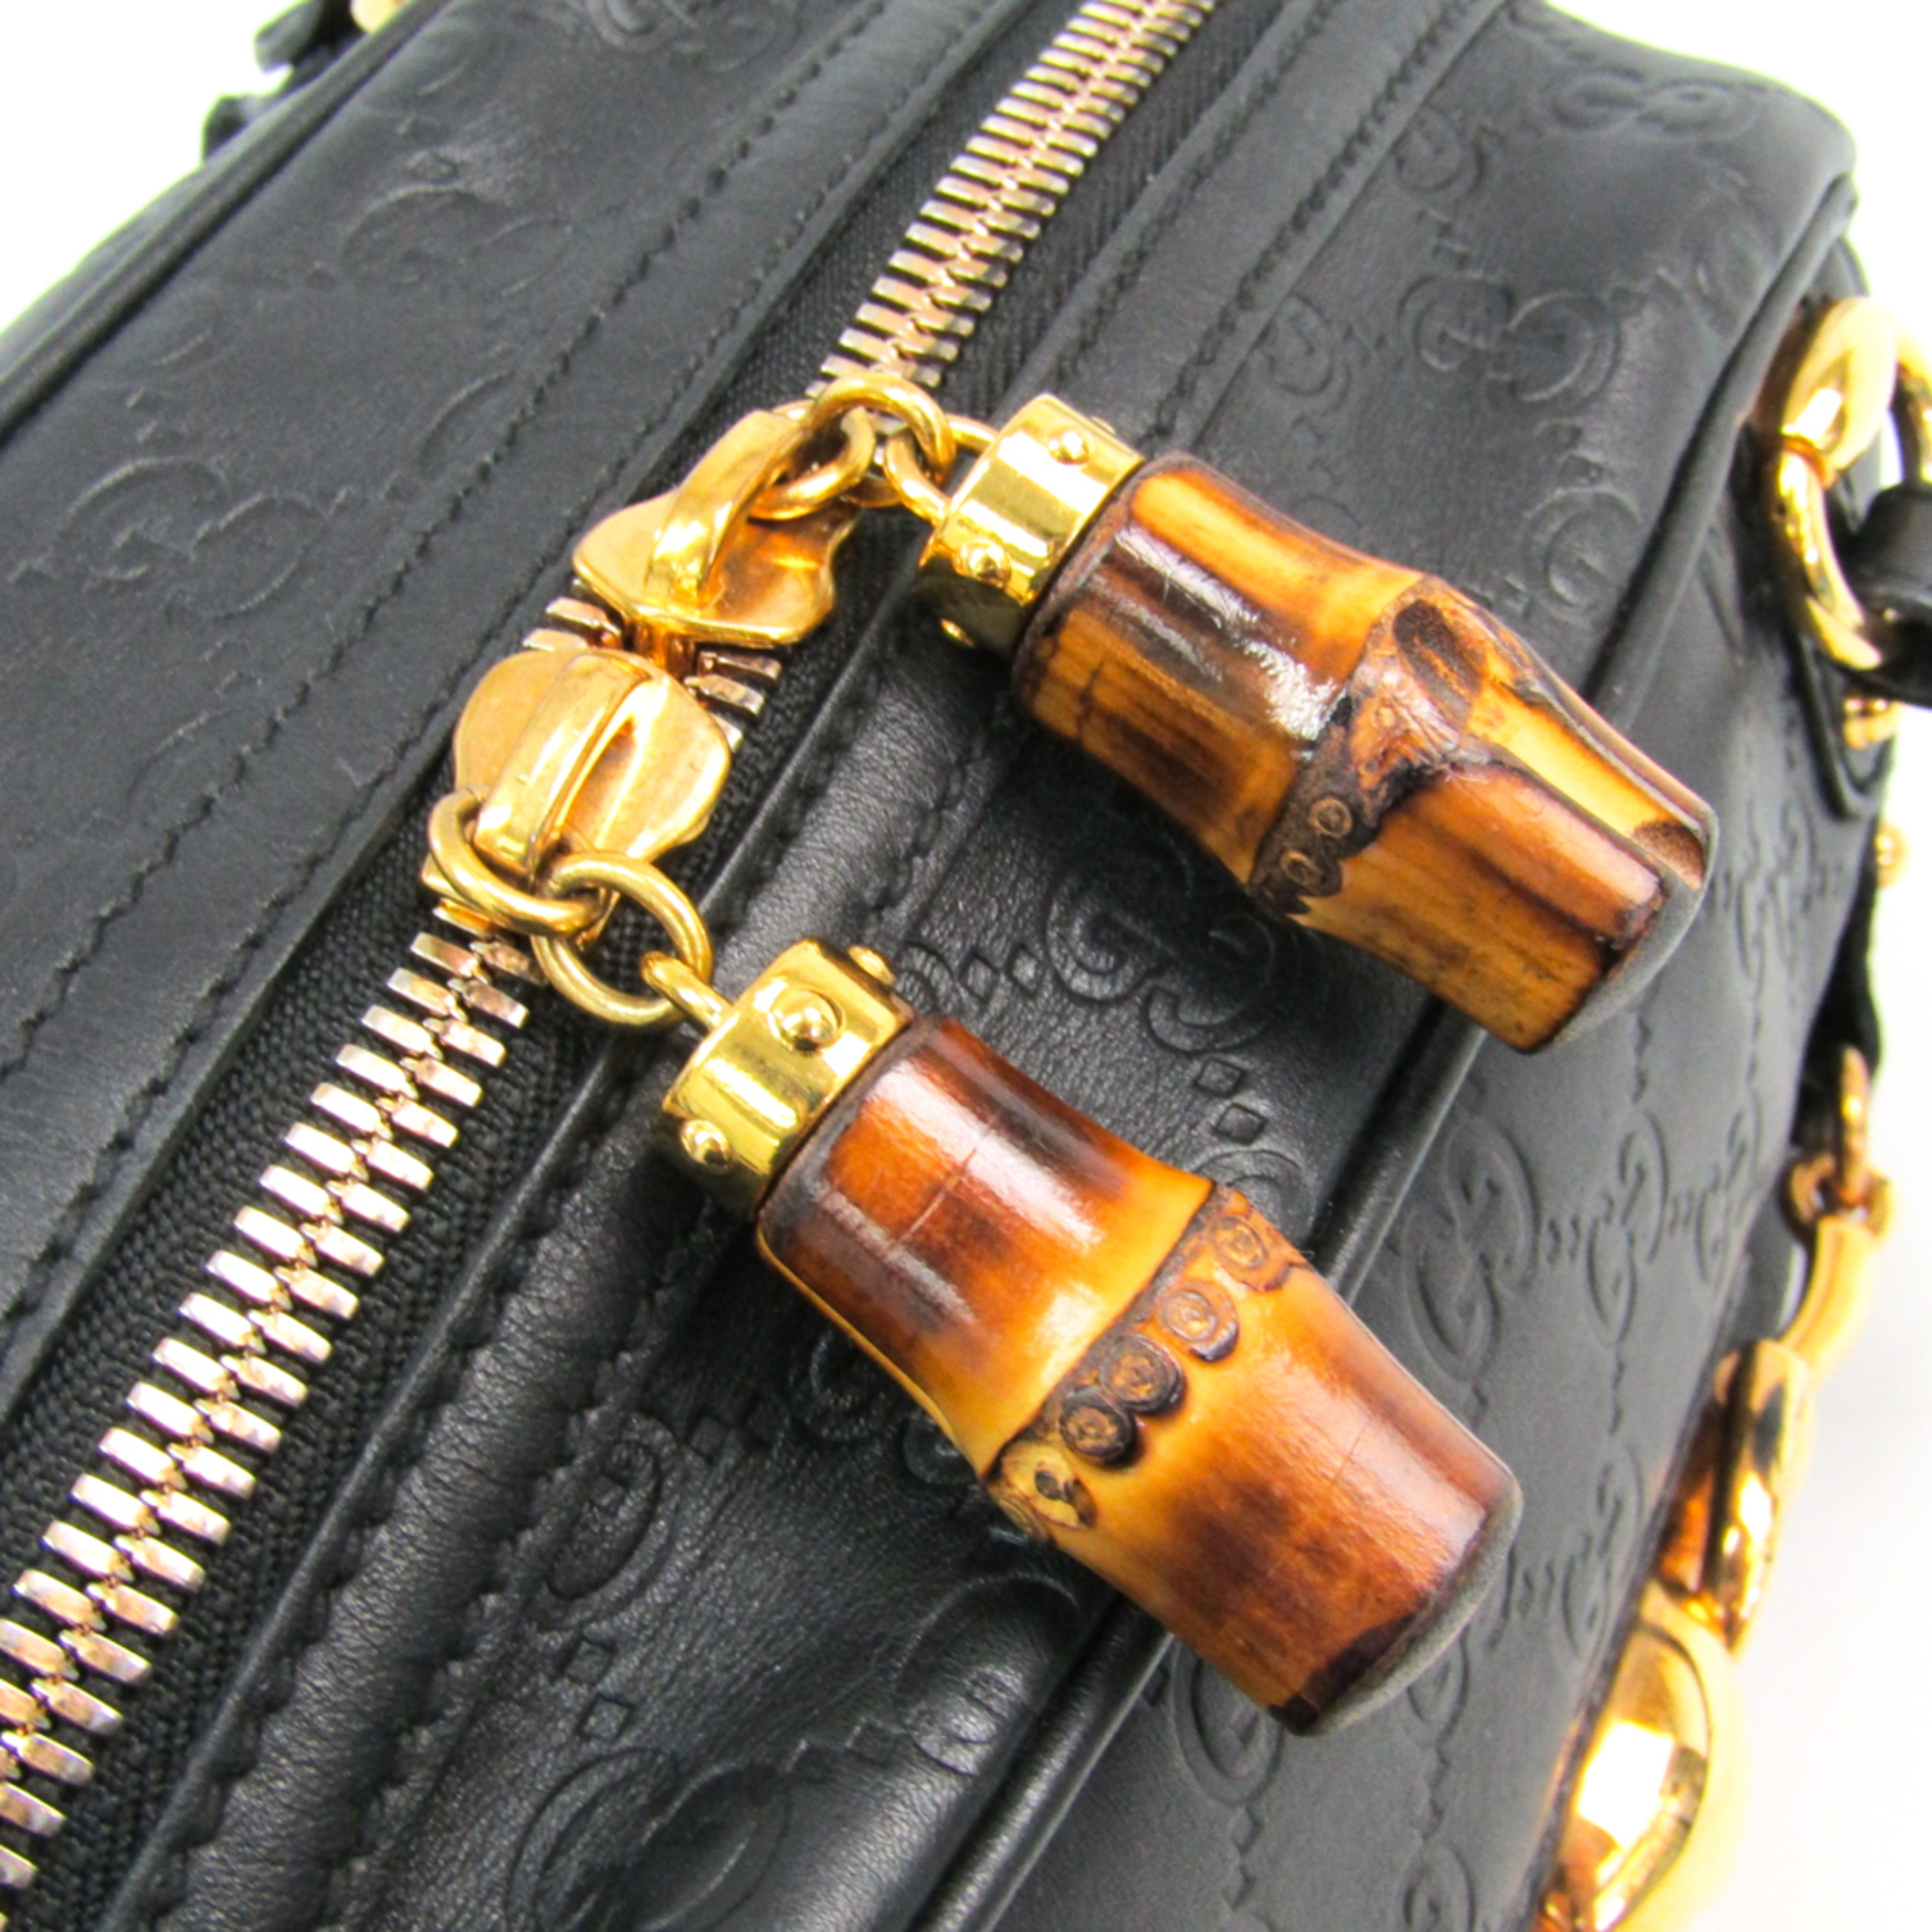 Gucci Guccissima 159399 Women's Leather,Bamboo Handbag Black